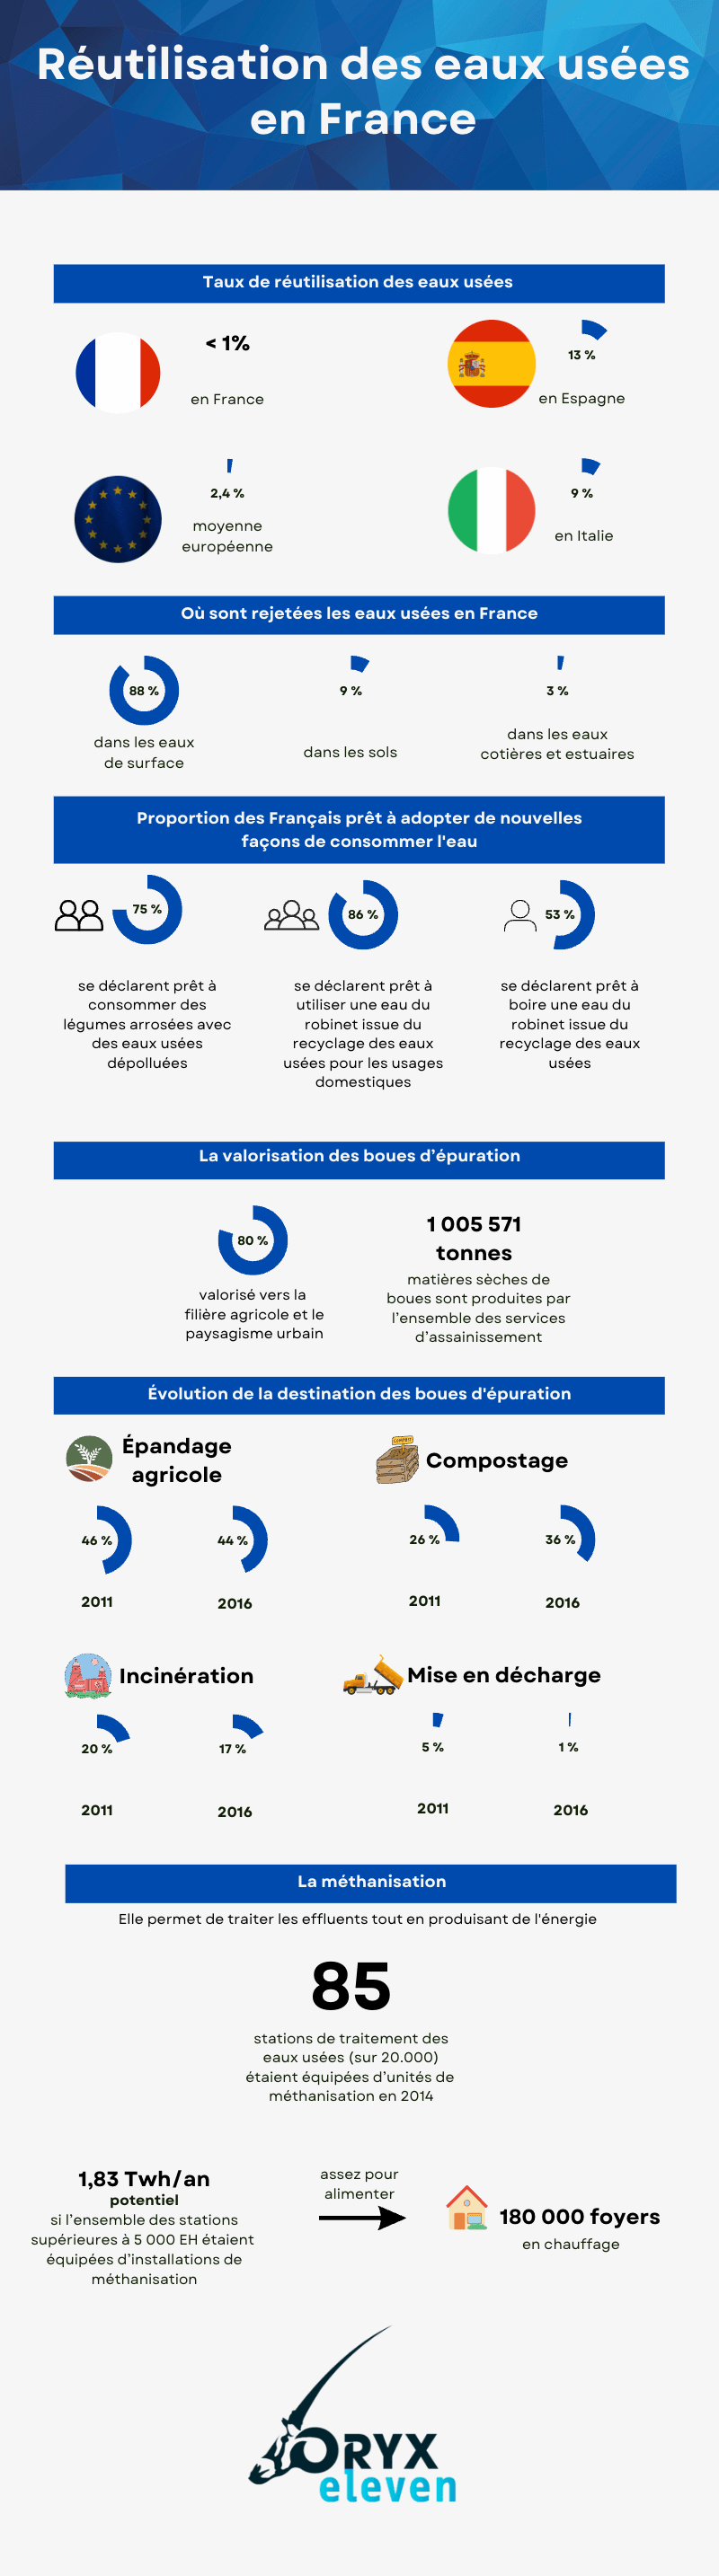 Infographie sur la réutilisation des eaux usées en France et dans le monde